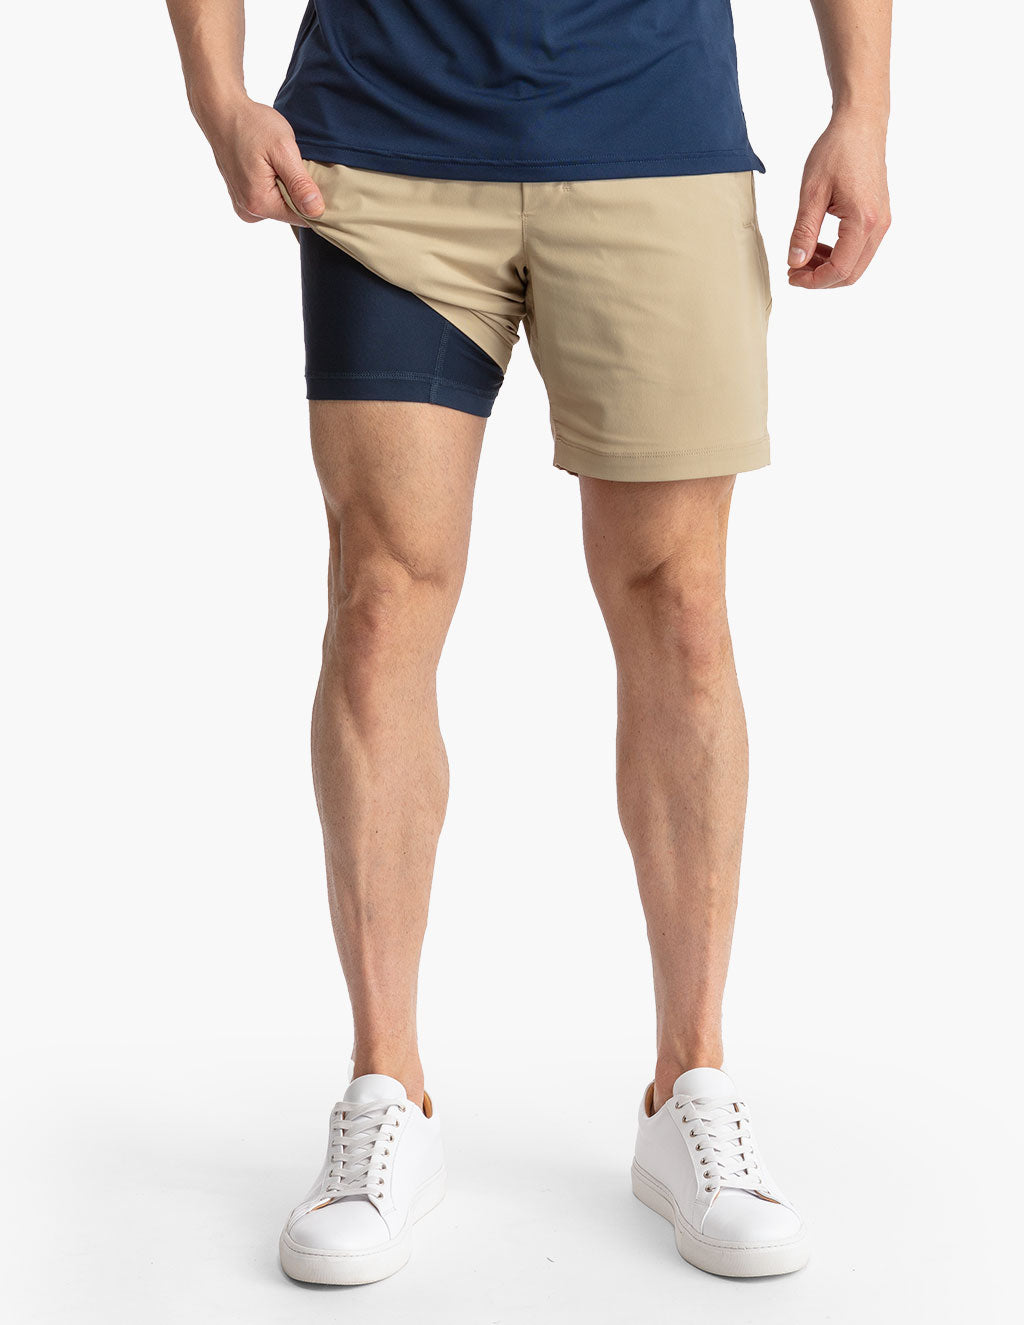 Outdoor Sex Pants Zippers Open Croch Thin Shorts Women Summer New